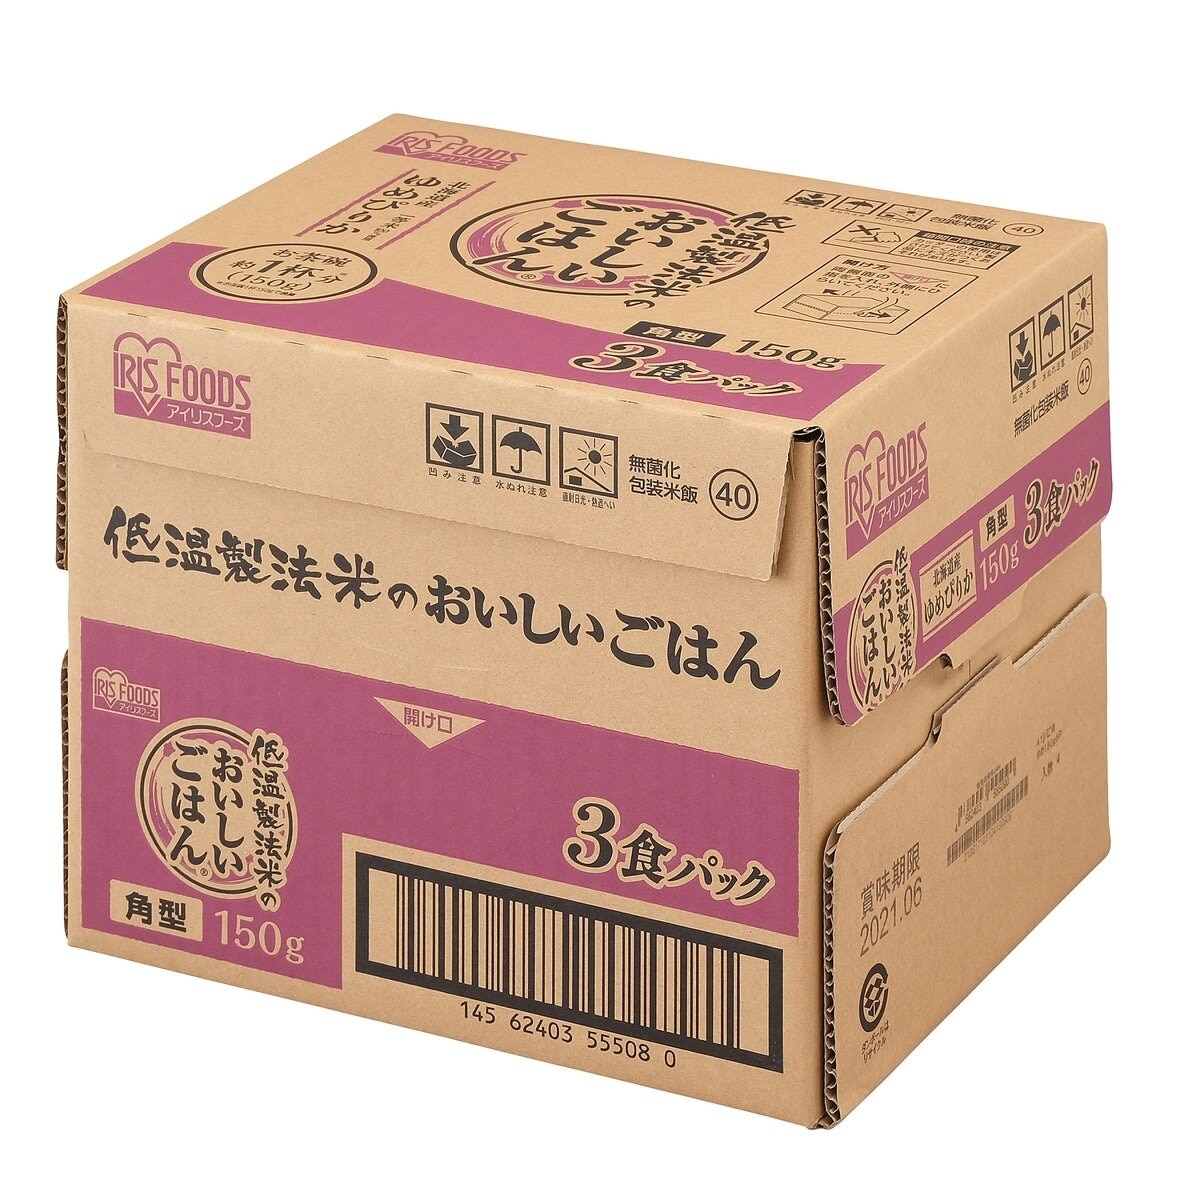 150g　Costco　低温製法ゆめぴりか　パックライス　24食　x　Japan